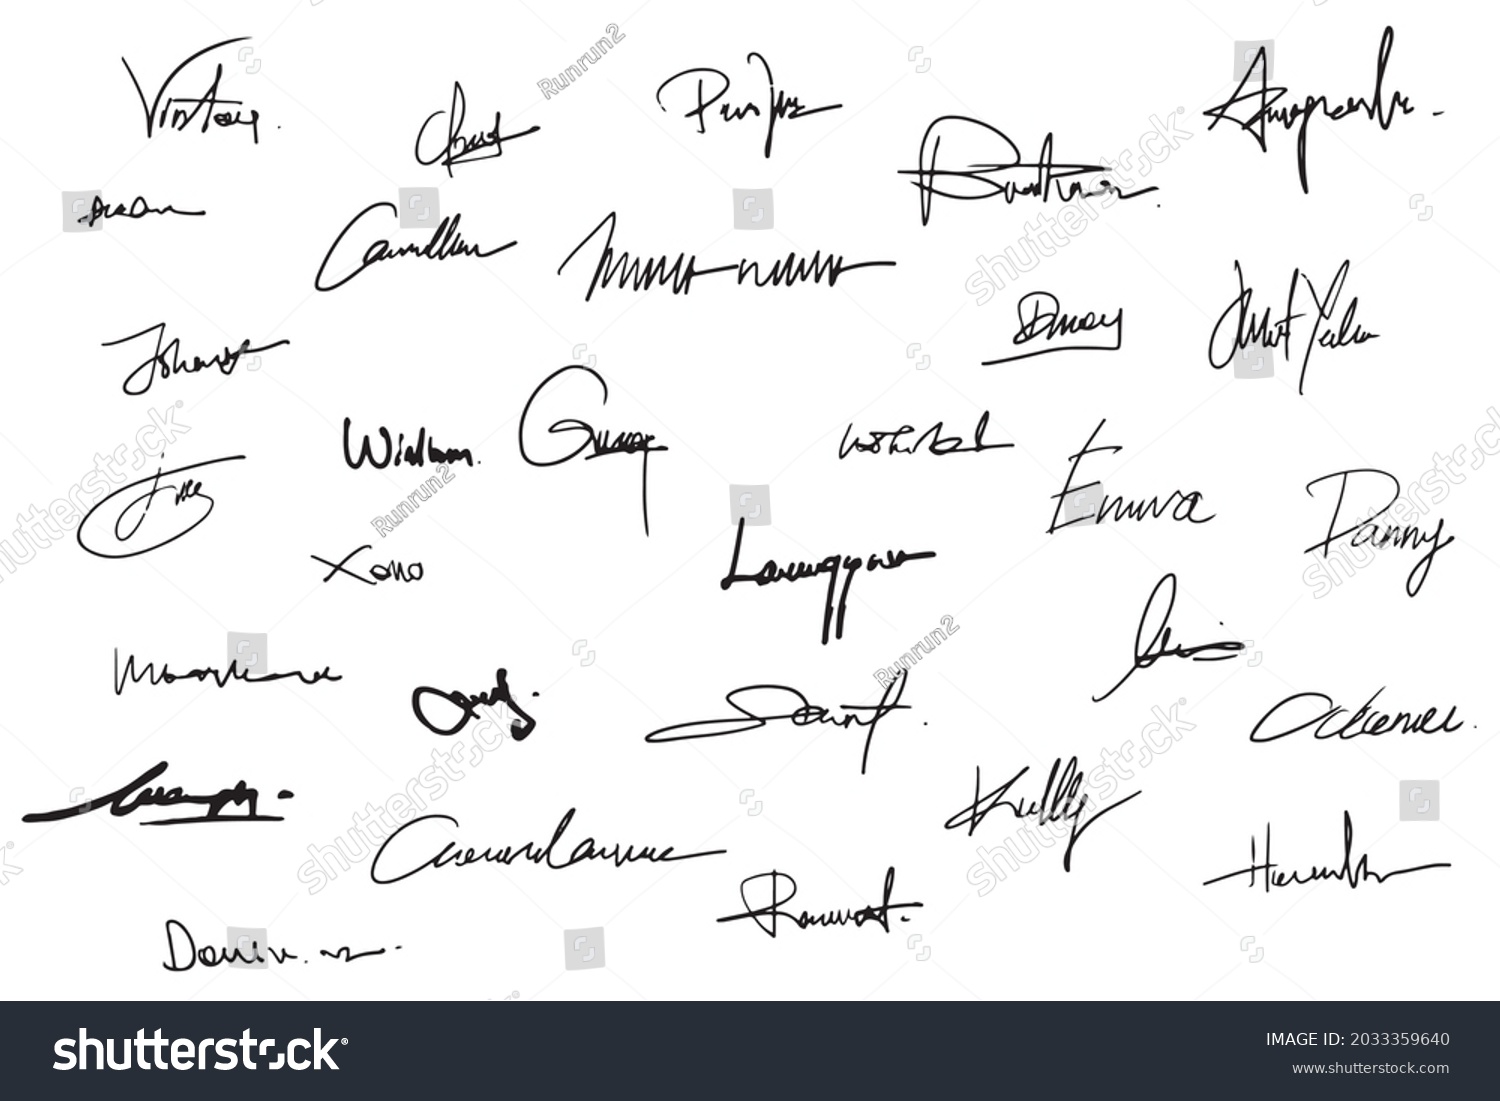 artist signatures identification